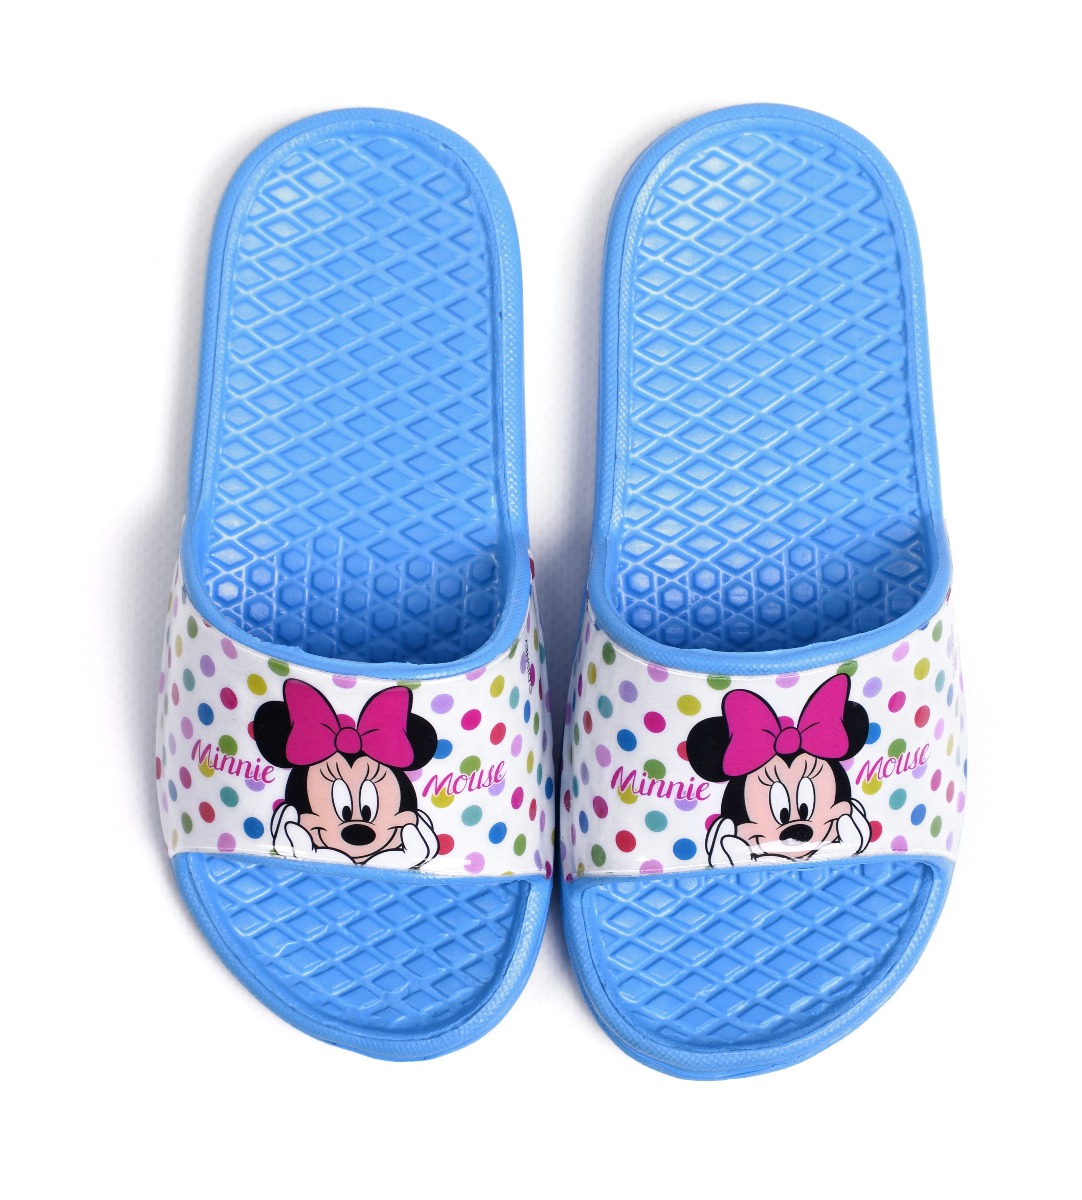 Резиновые шлепки ''Minnie Mouse'' для девочки, DIS MF 52 51 9347 (голубые)